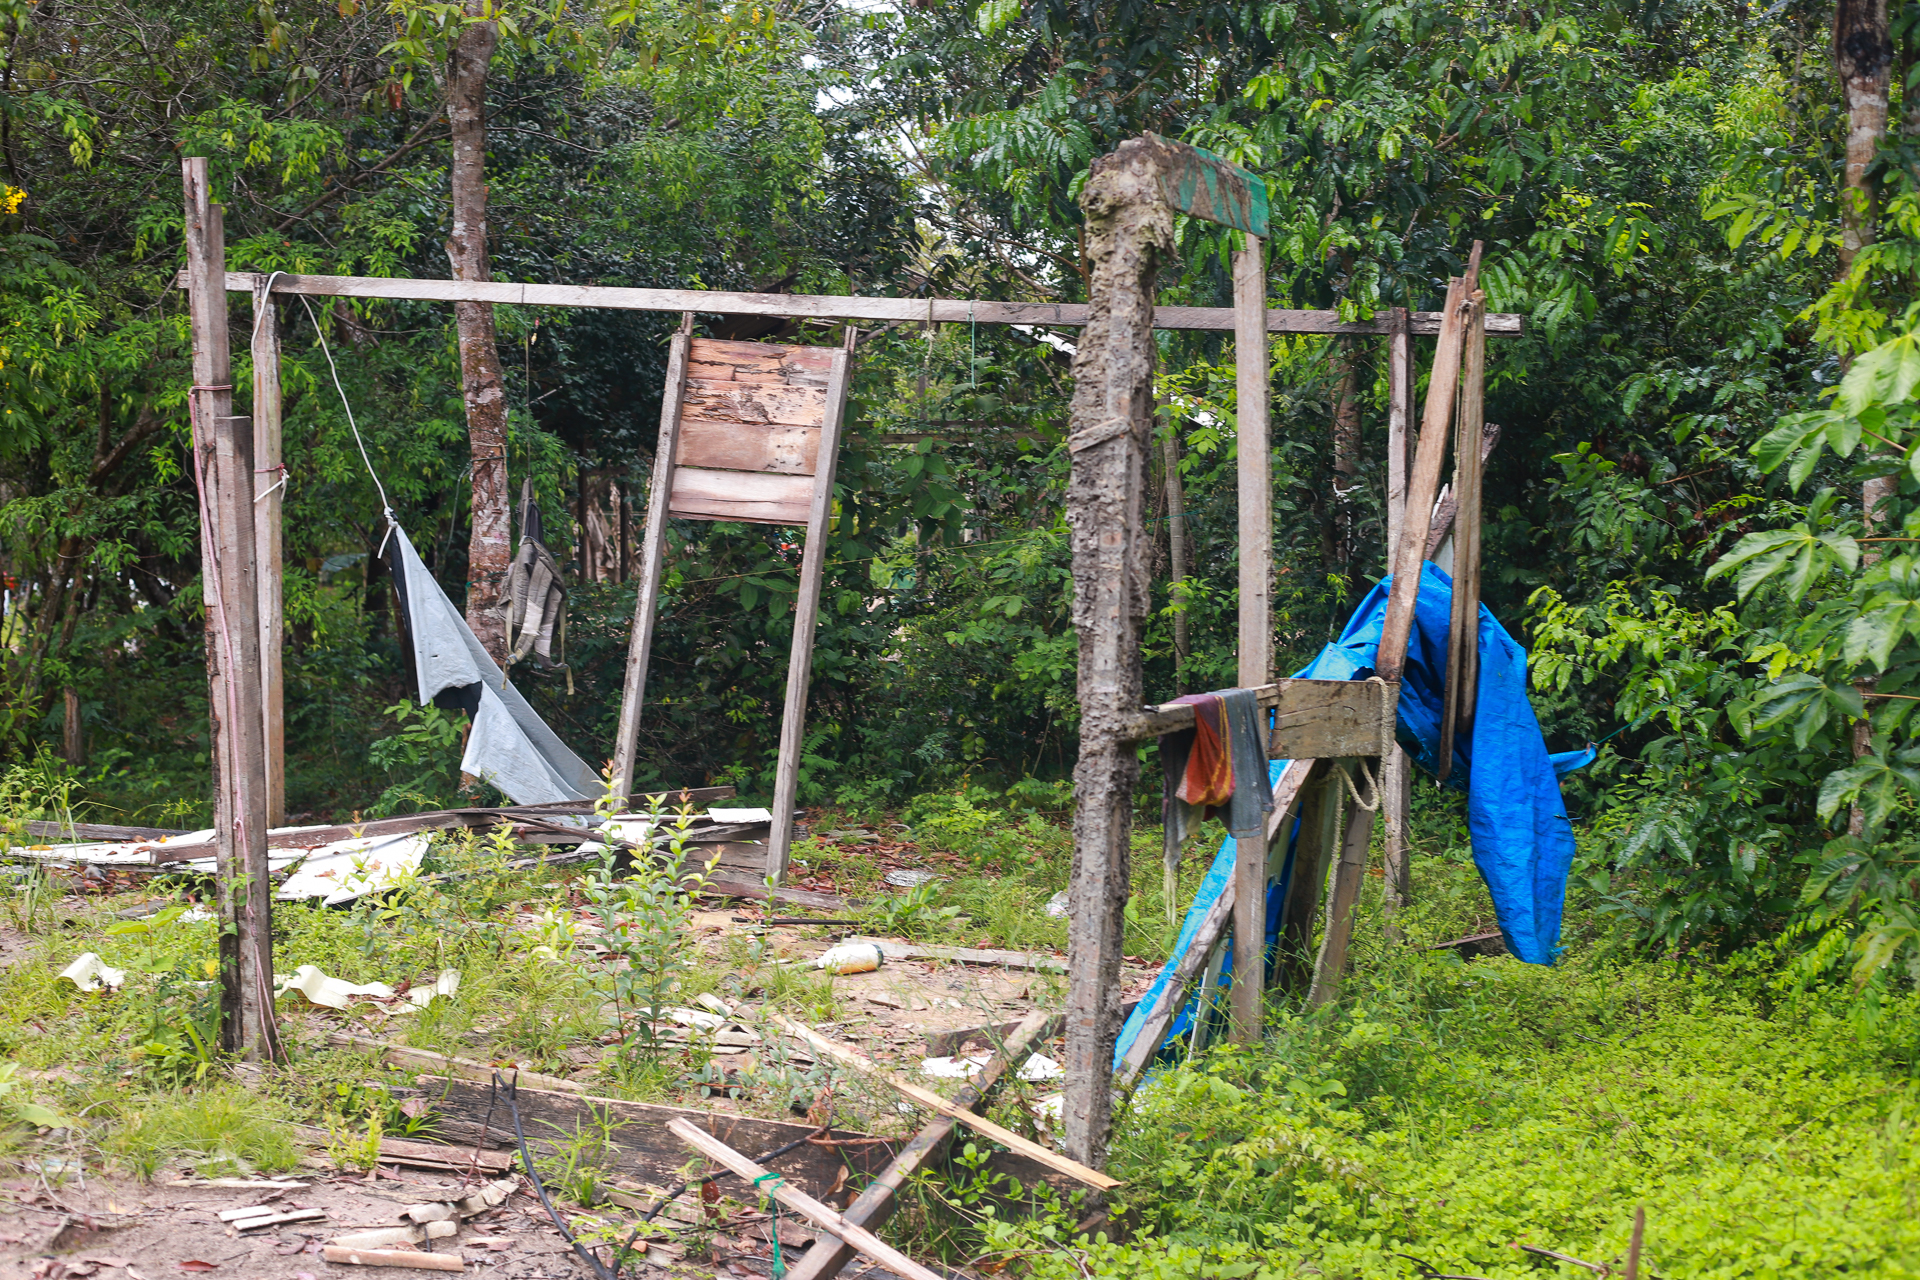 Em 2021, as casas das famílias de Sitio Bacabal foram destruídas arbitrariamente (Foto: Tapajós de Fato)